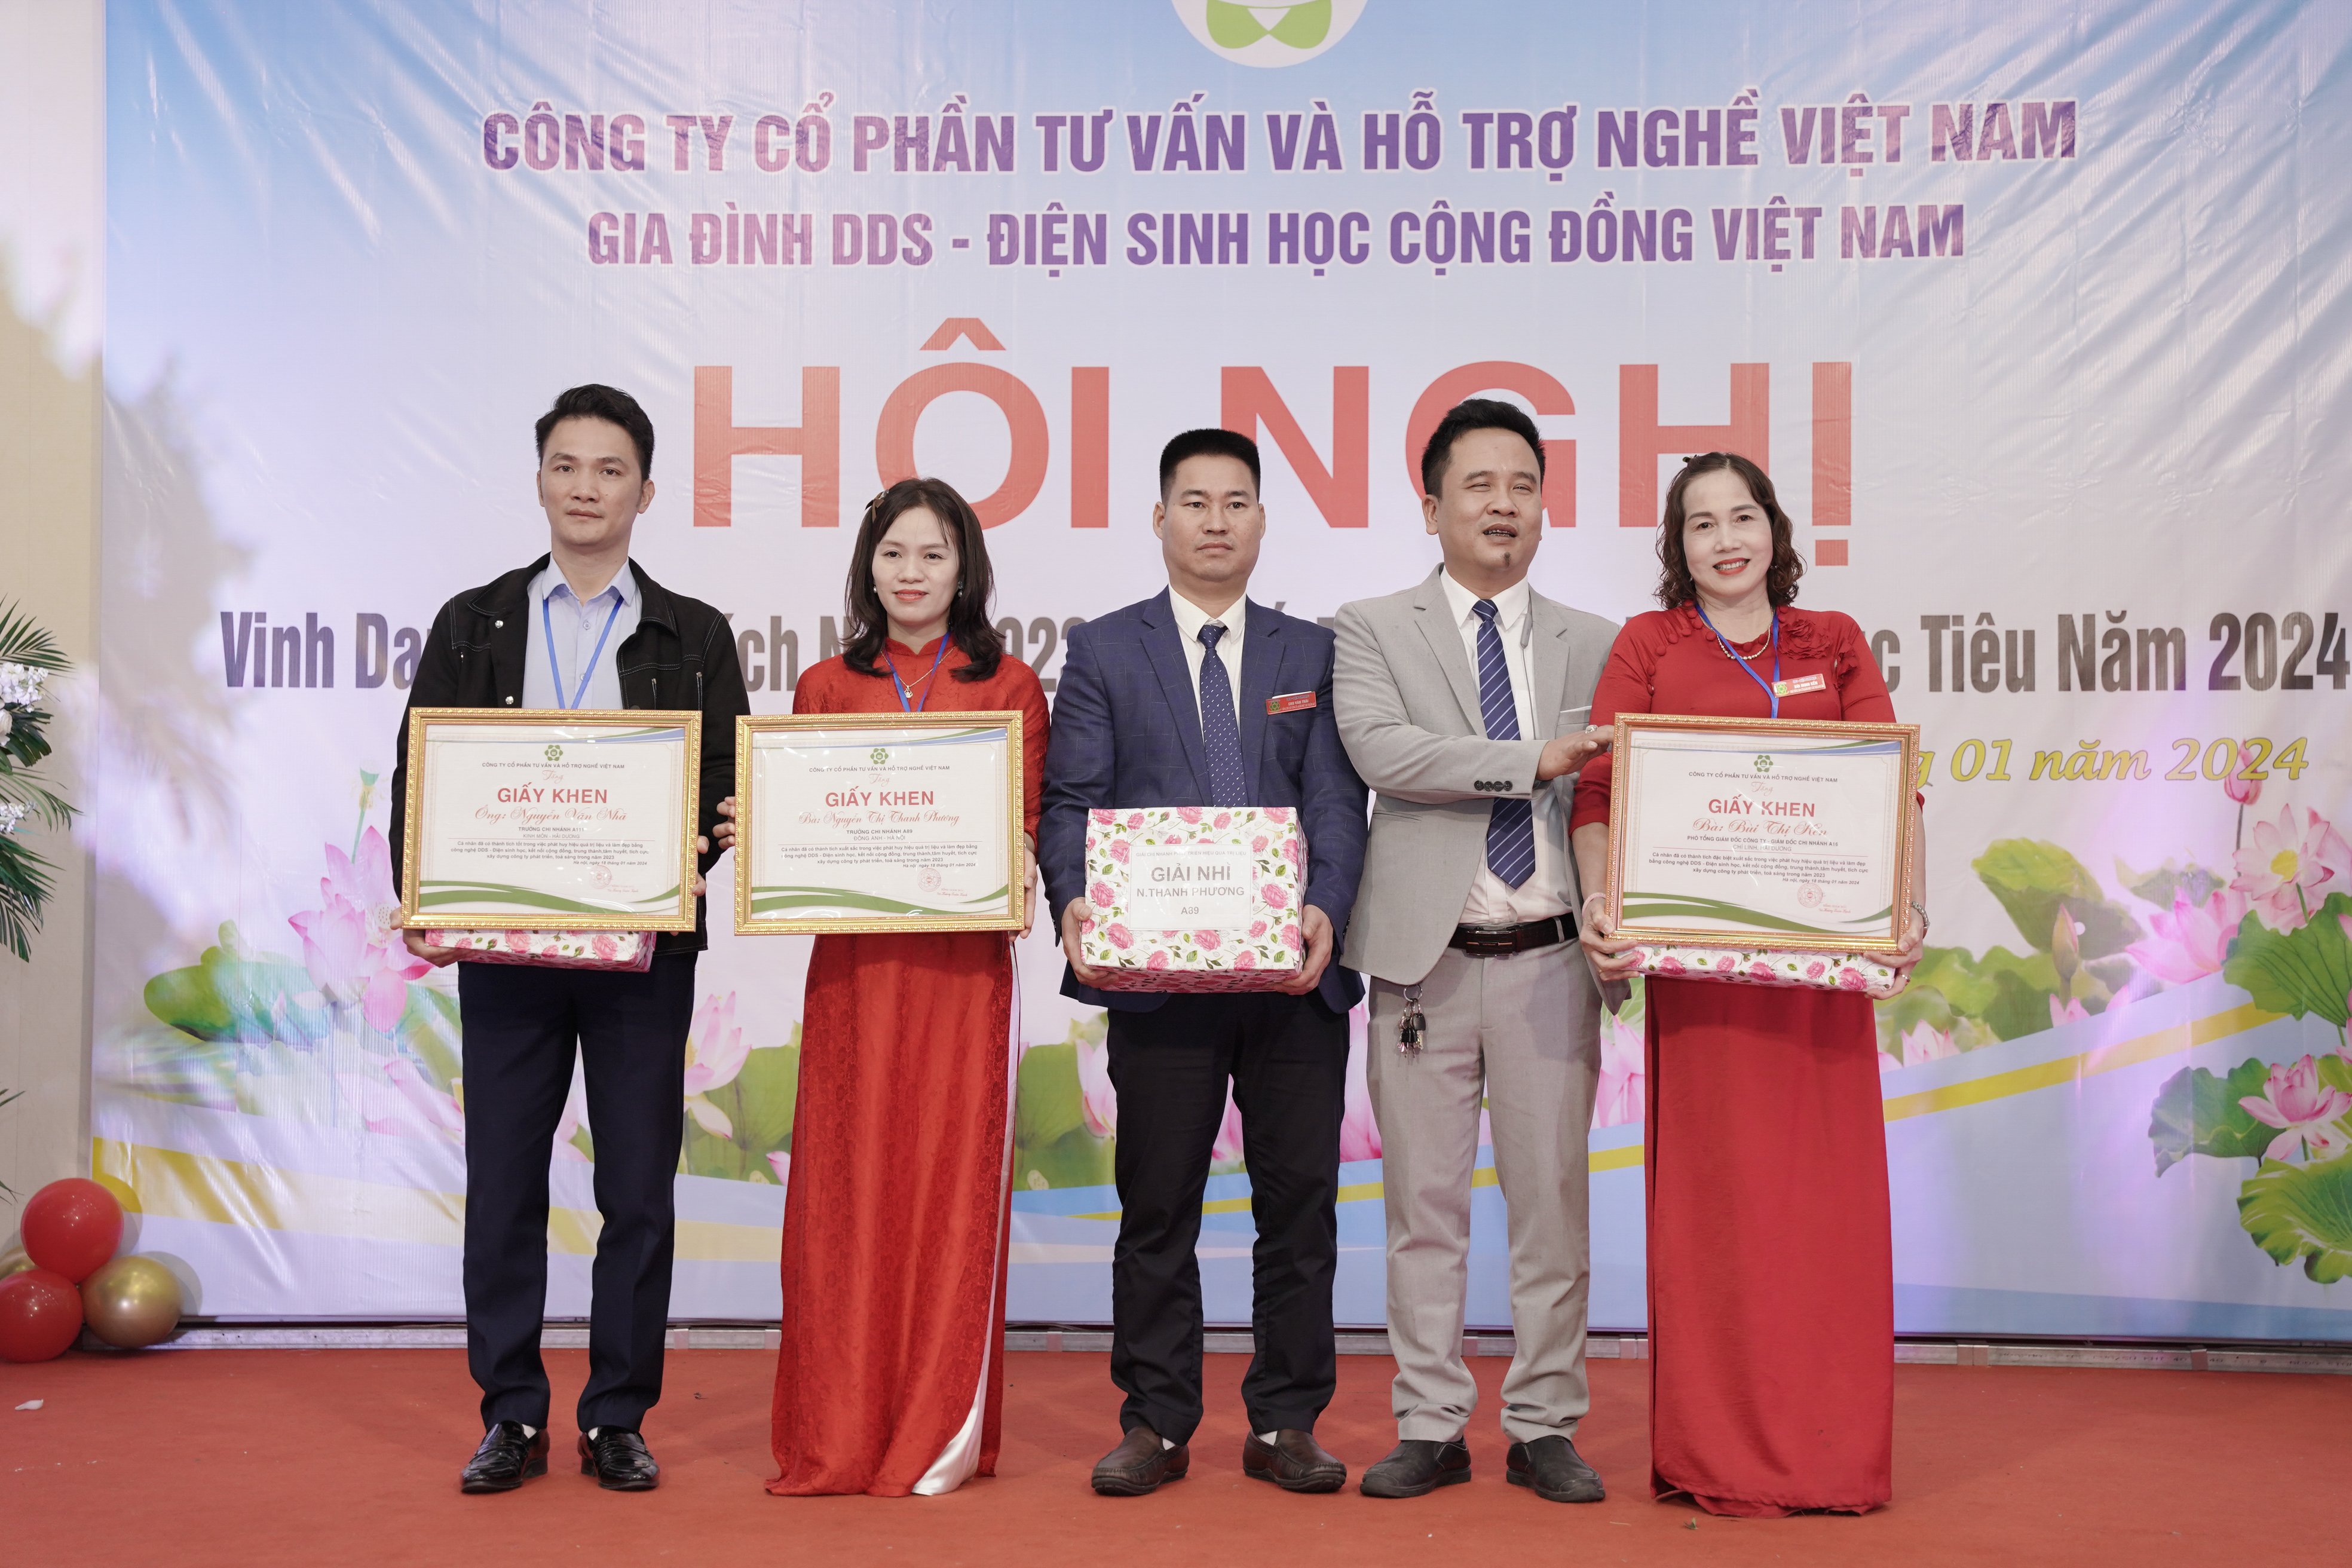 Video Hội nghị vinh danh thành tích năm 2023, chinh phục mục tiêu năm 2024 của gia đình DDS Việt Nam